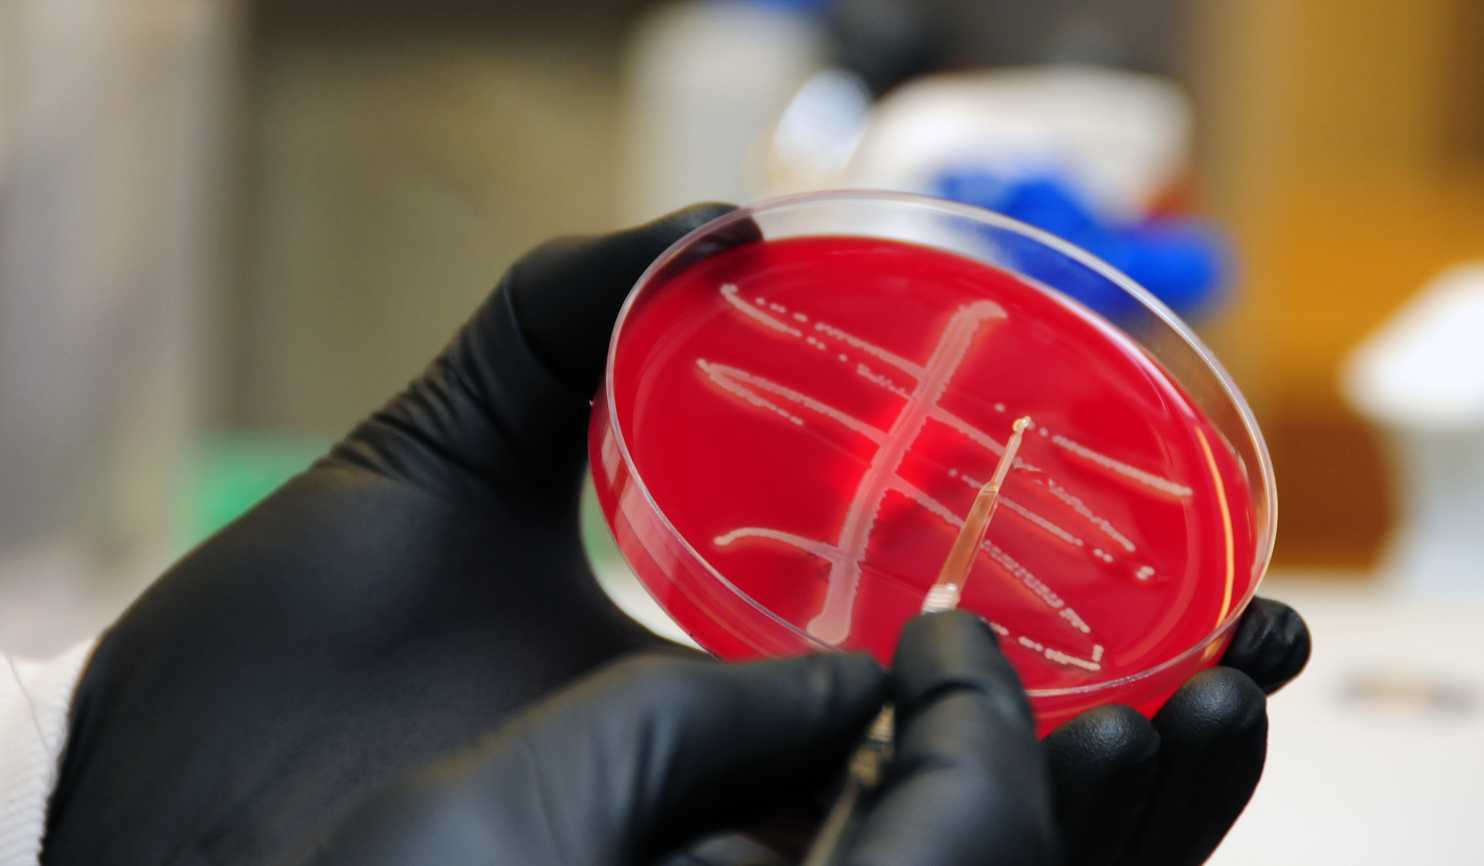 Rare Superbug Gene Discovered on U.S. Pig Farm